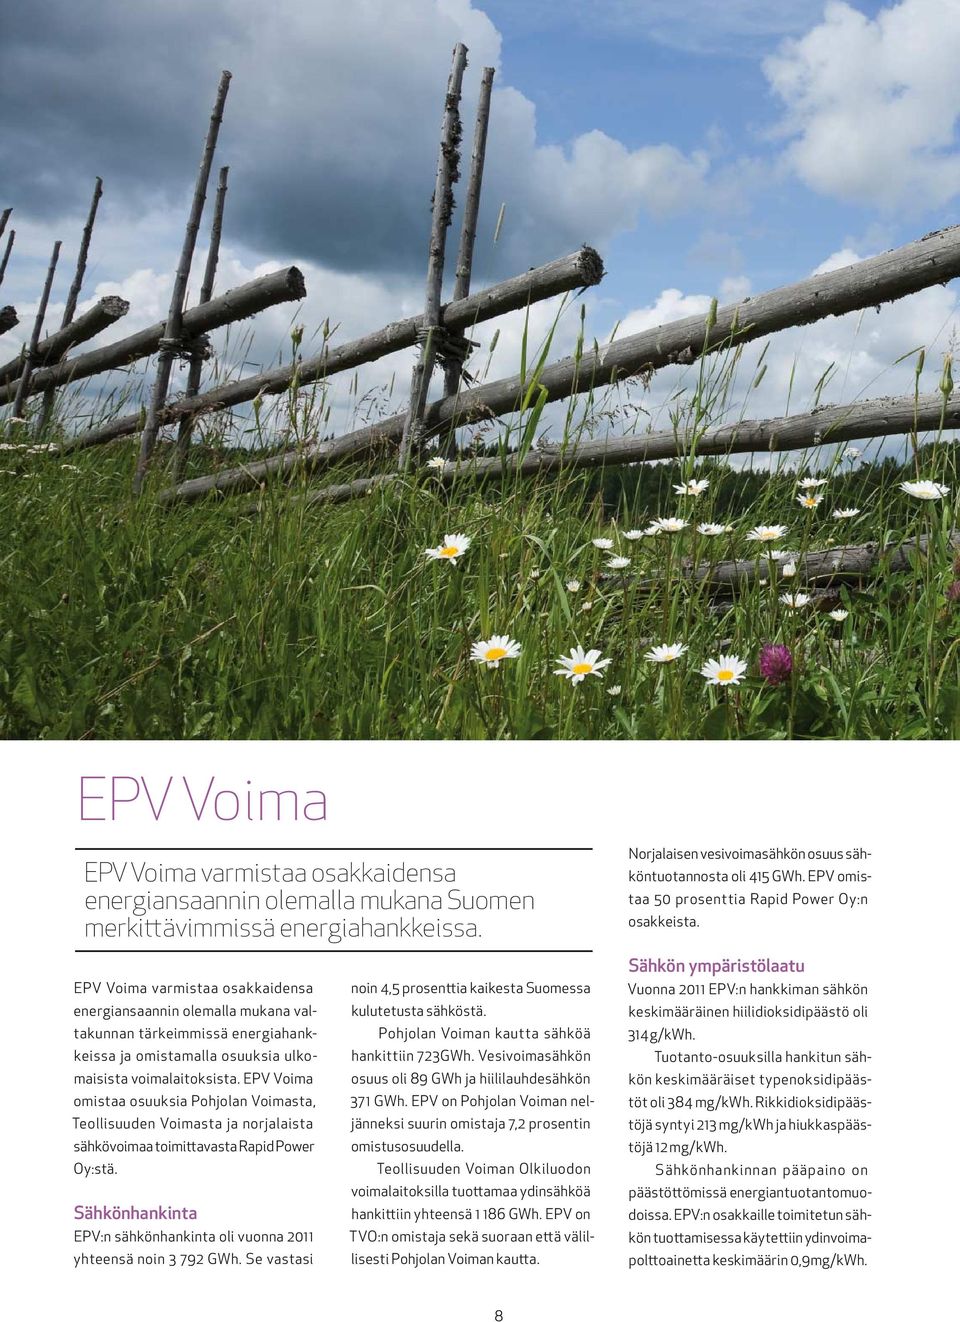 EPV Voima varmistaa osakkaidensa energiansaannin olemalla mukana valtakunnan tärkeimmissä energiahankkeissa ja omistamalla osuuksia ulkomaisista voimalaitoksista.